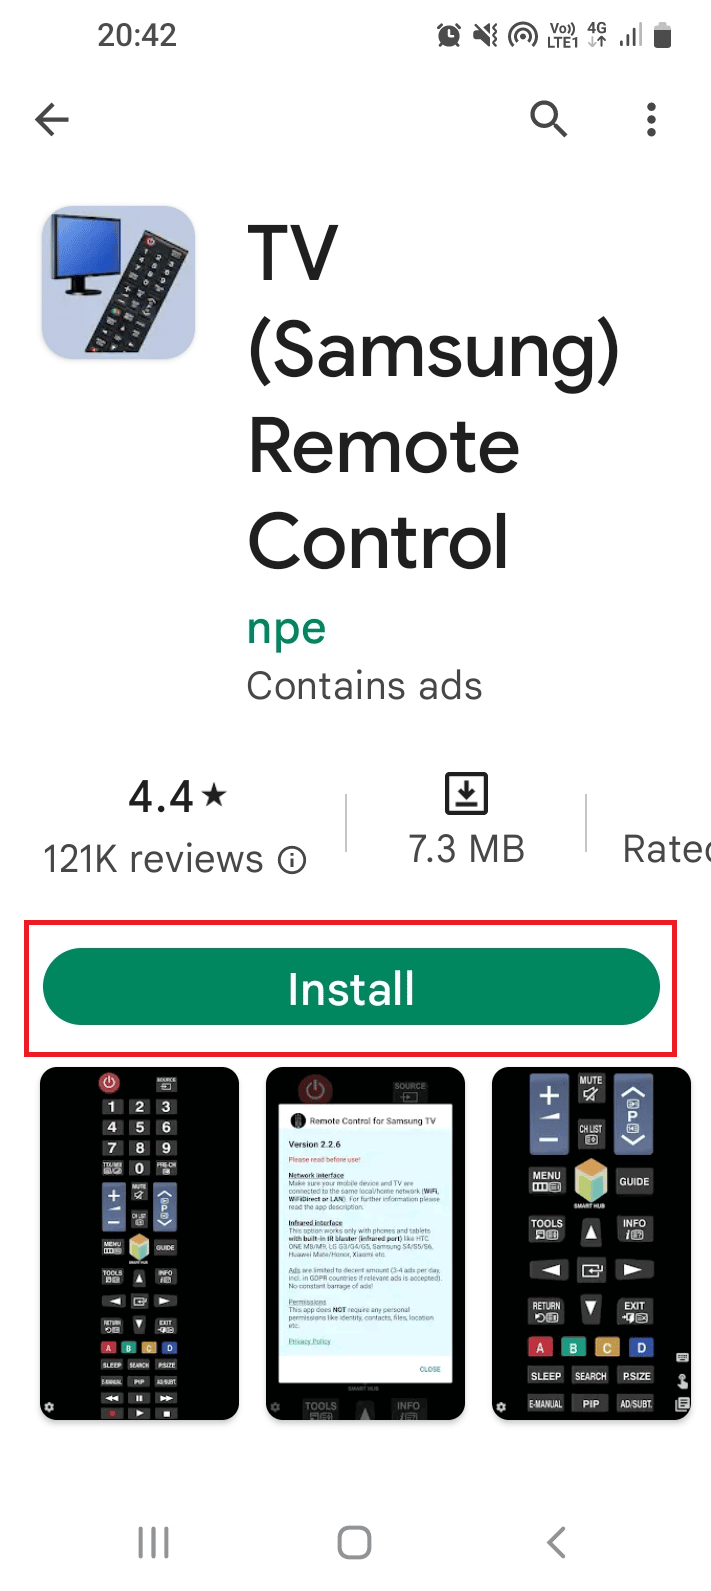 Нажмите кнопку «Установить» в приложении Samsung Remote Control на телевизоре.